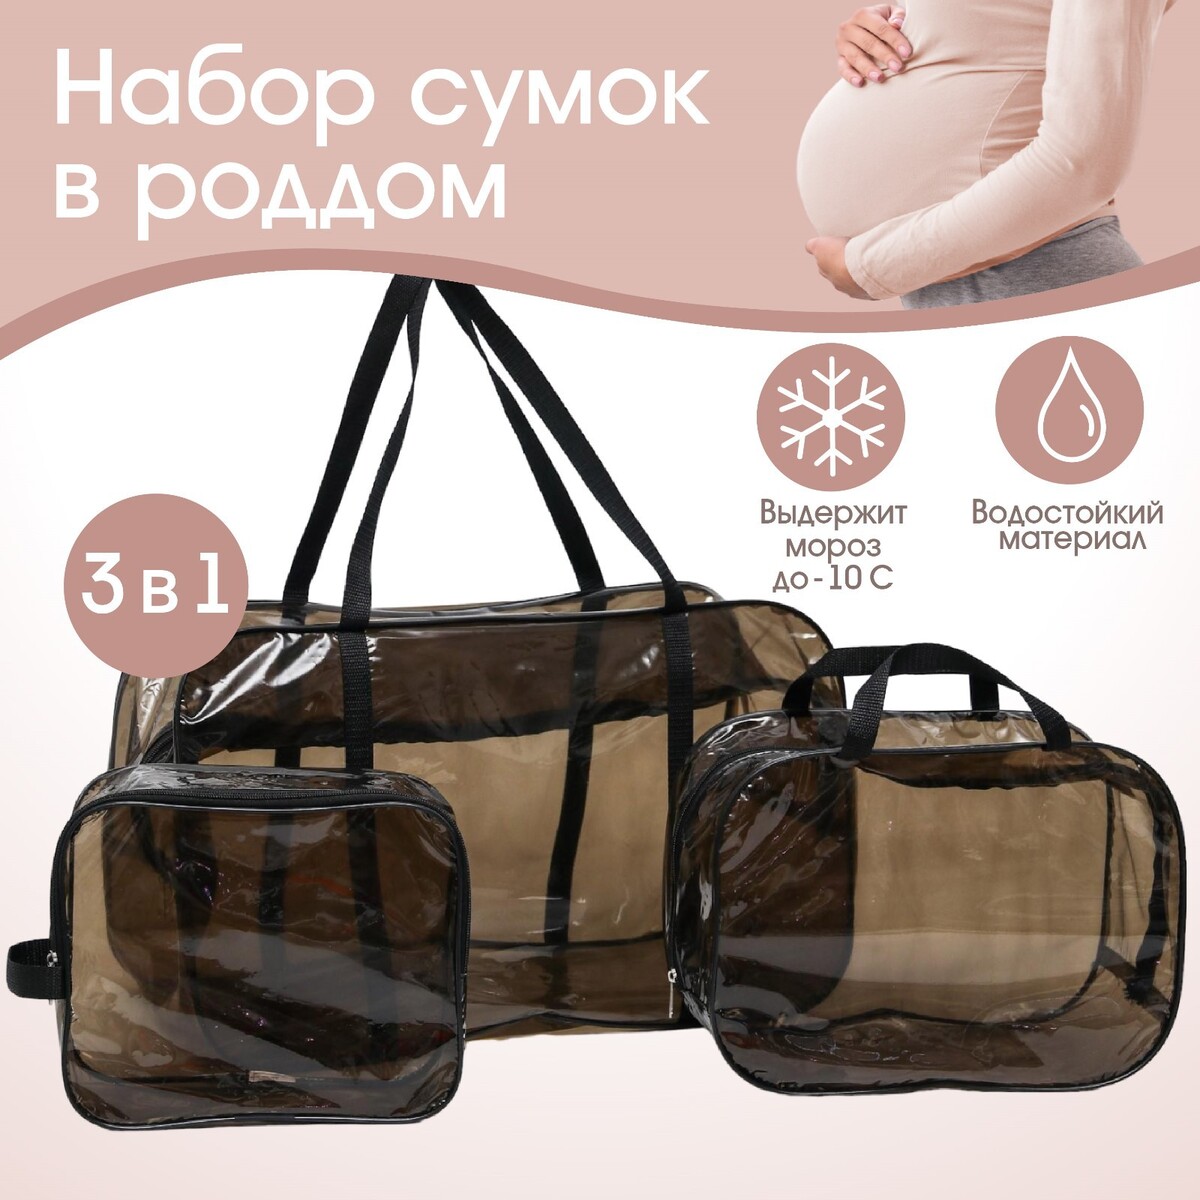 фото Набор сумок в роддом, 3 шт., цветной пвх, цвет черный mum&baby